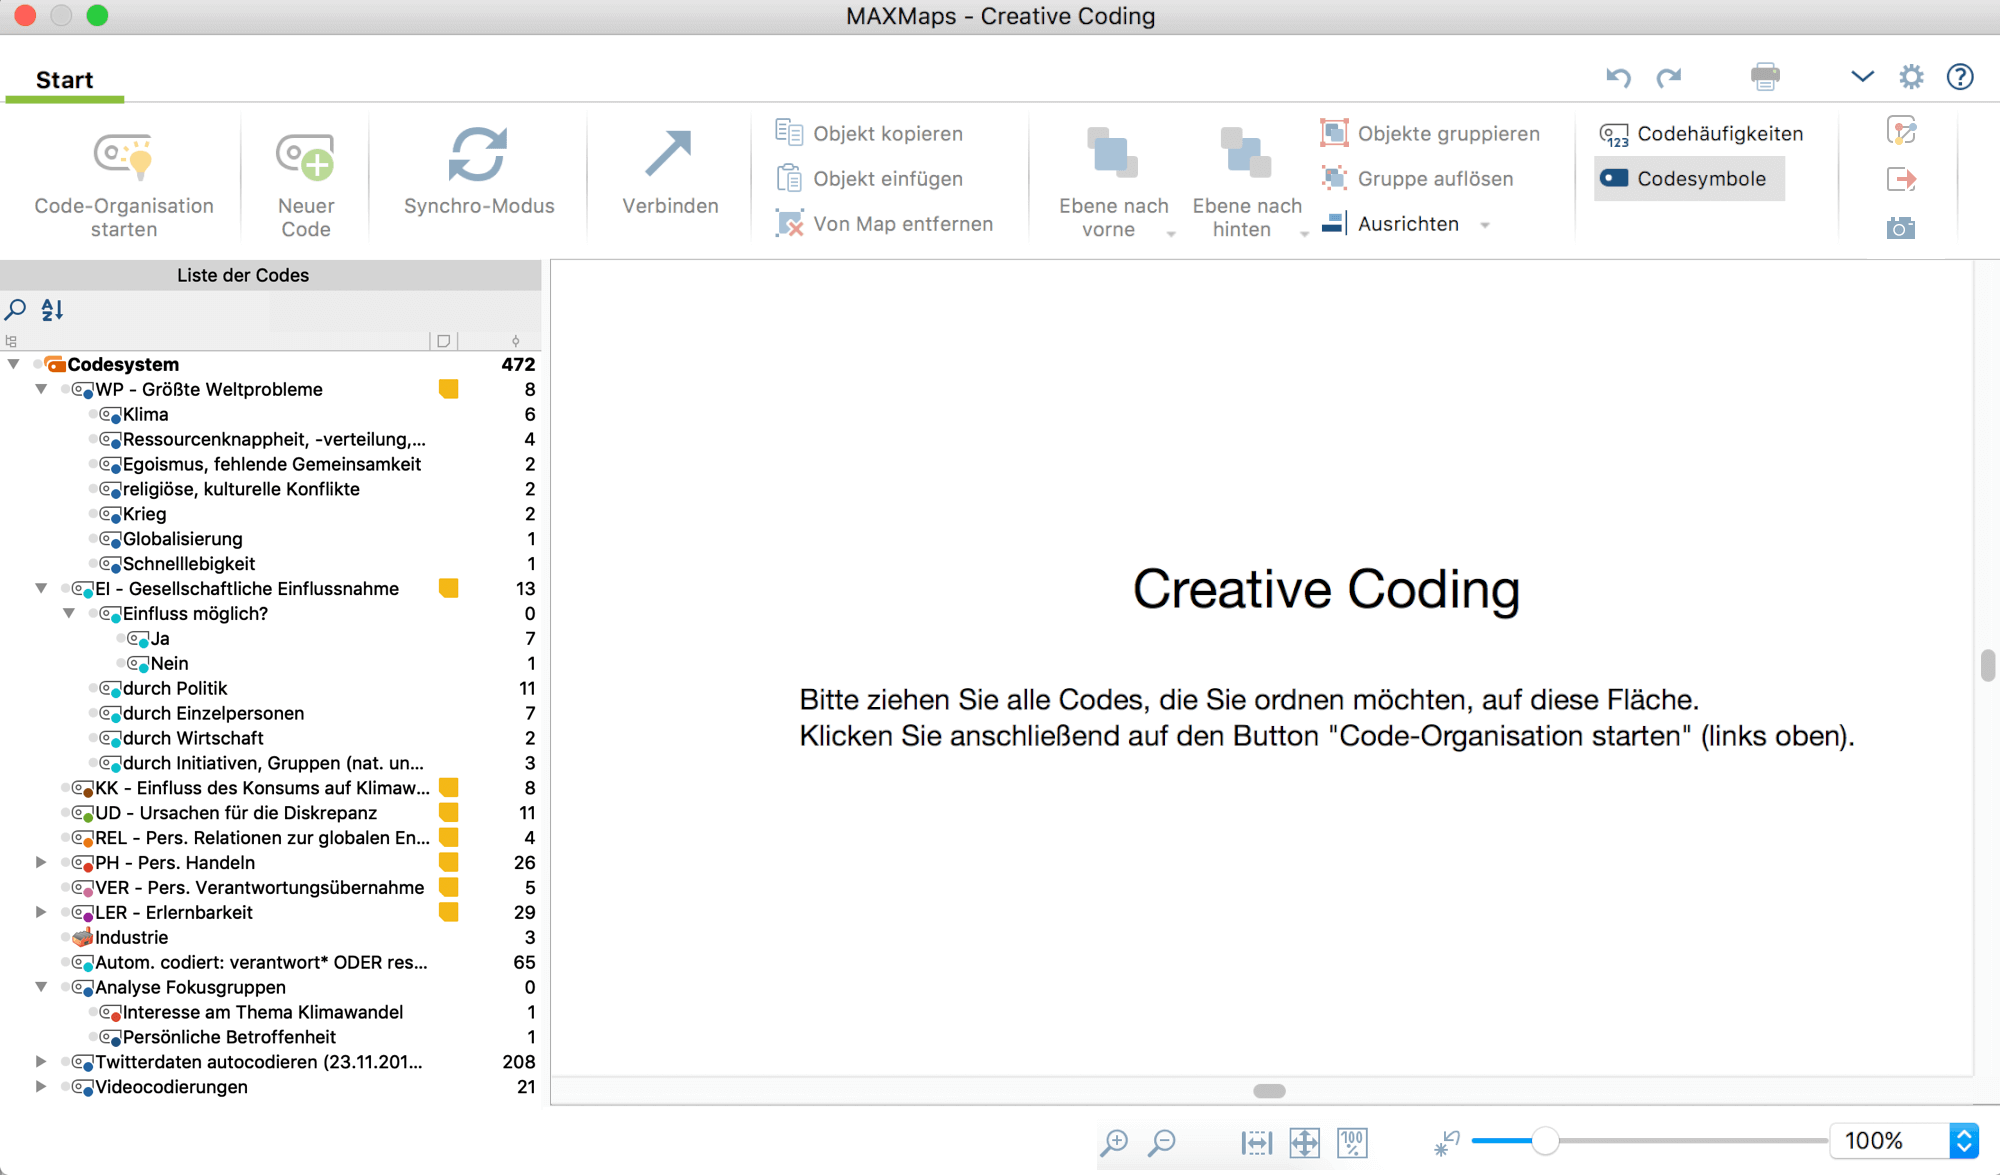 Codes auswählen für Creative Coding